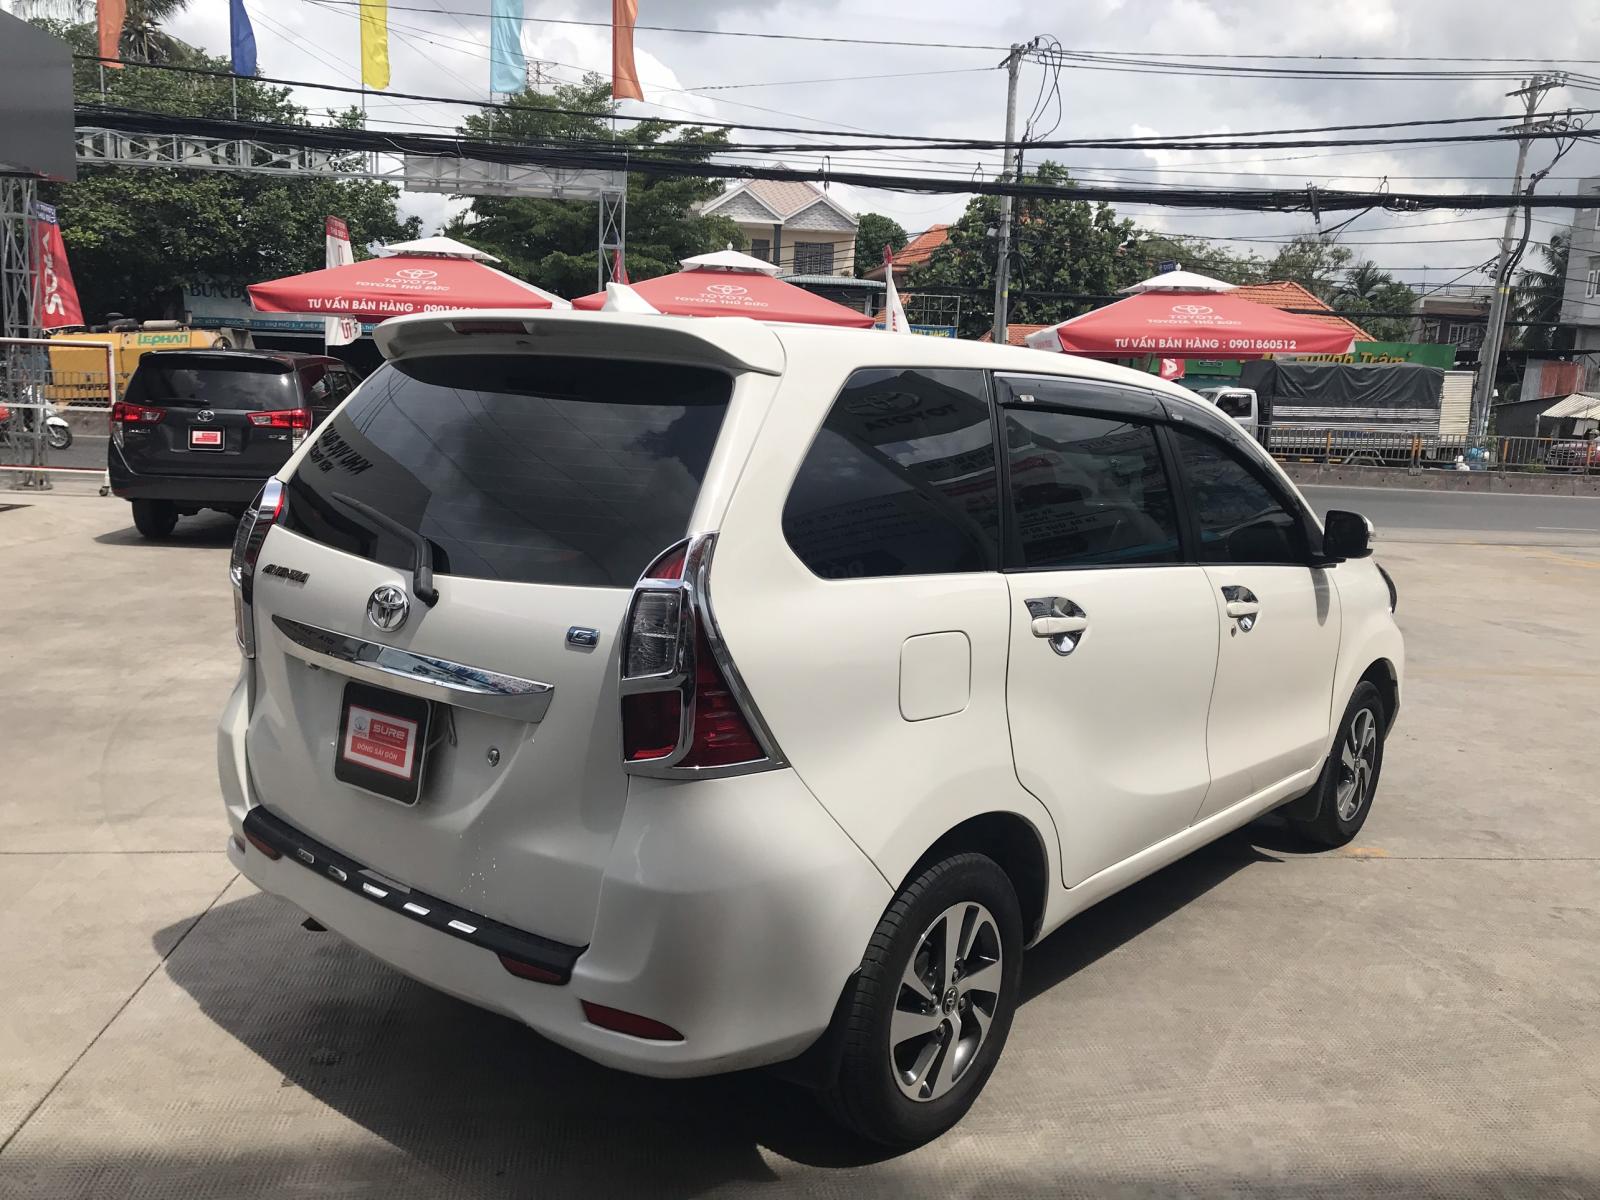 Toyota Toyota khác 1.3 2018 - Avaza G 2018 xe đẹp đi kỹ bảo dưỡng rất đều